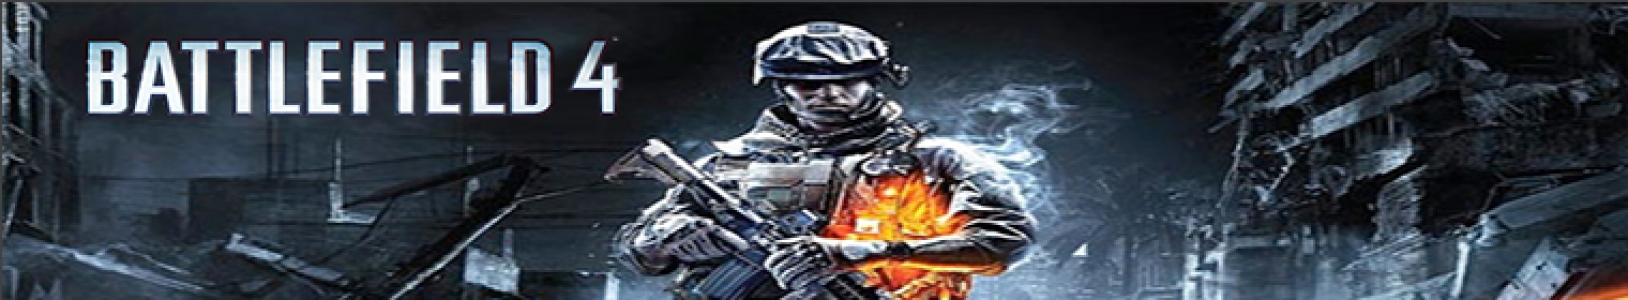 Battlefield 4 banner